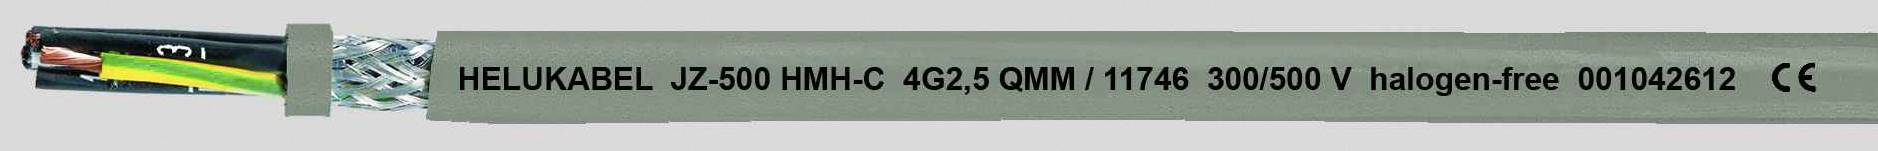 HELUKABEL JZ-500 HMH-C Steuerleitung 3 G 0.75 mm² Grau 11679-500 500 m